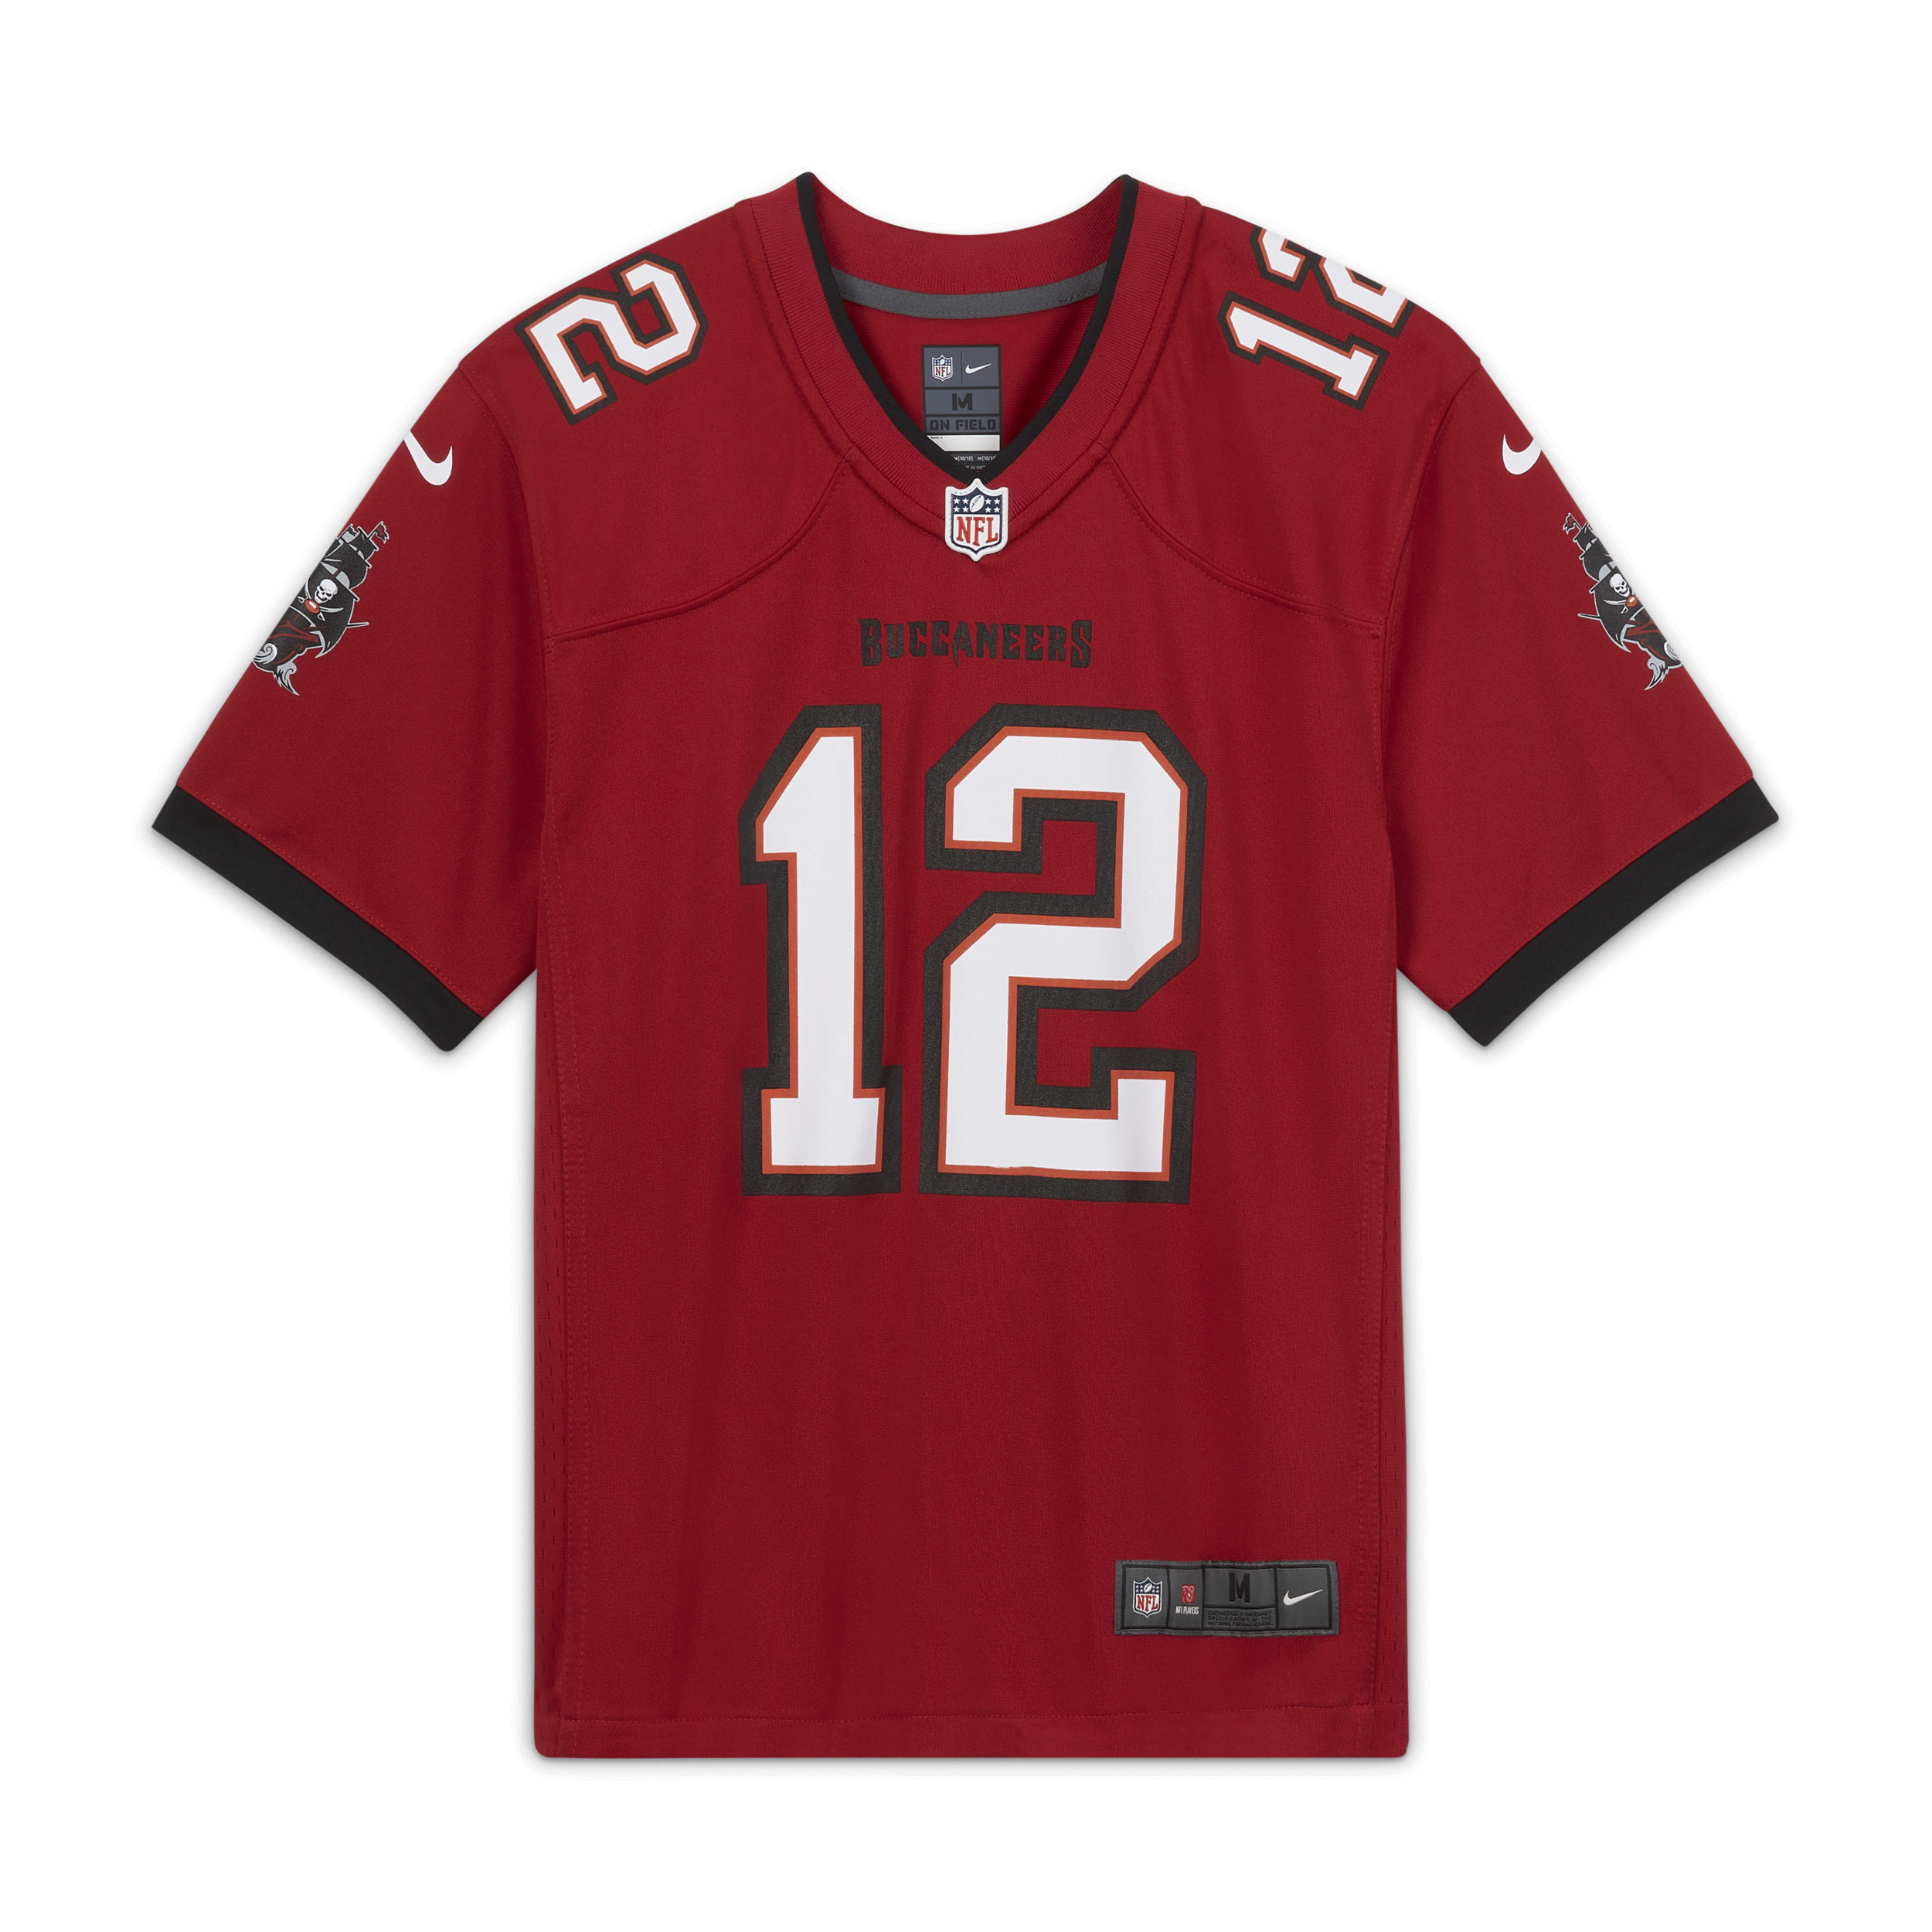 Nike NFL Tampa Bay Buccaneers (Tom Brady) Camiseta de fútbol americano del partido - Niño/a - Rojo